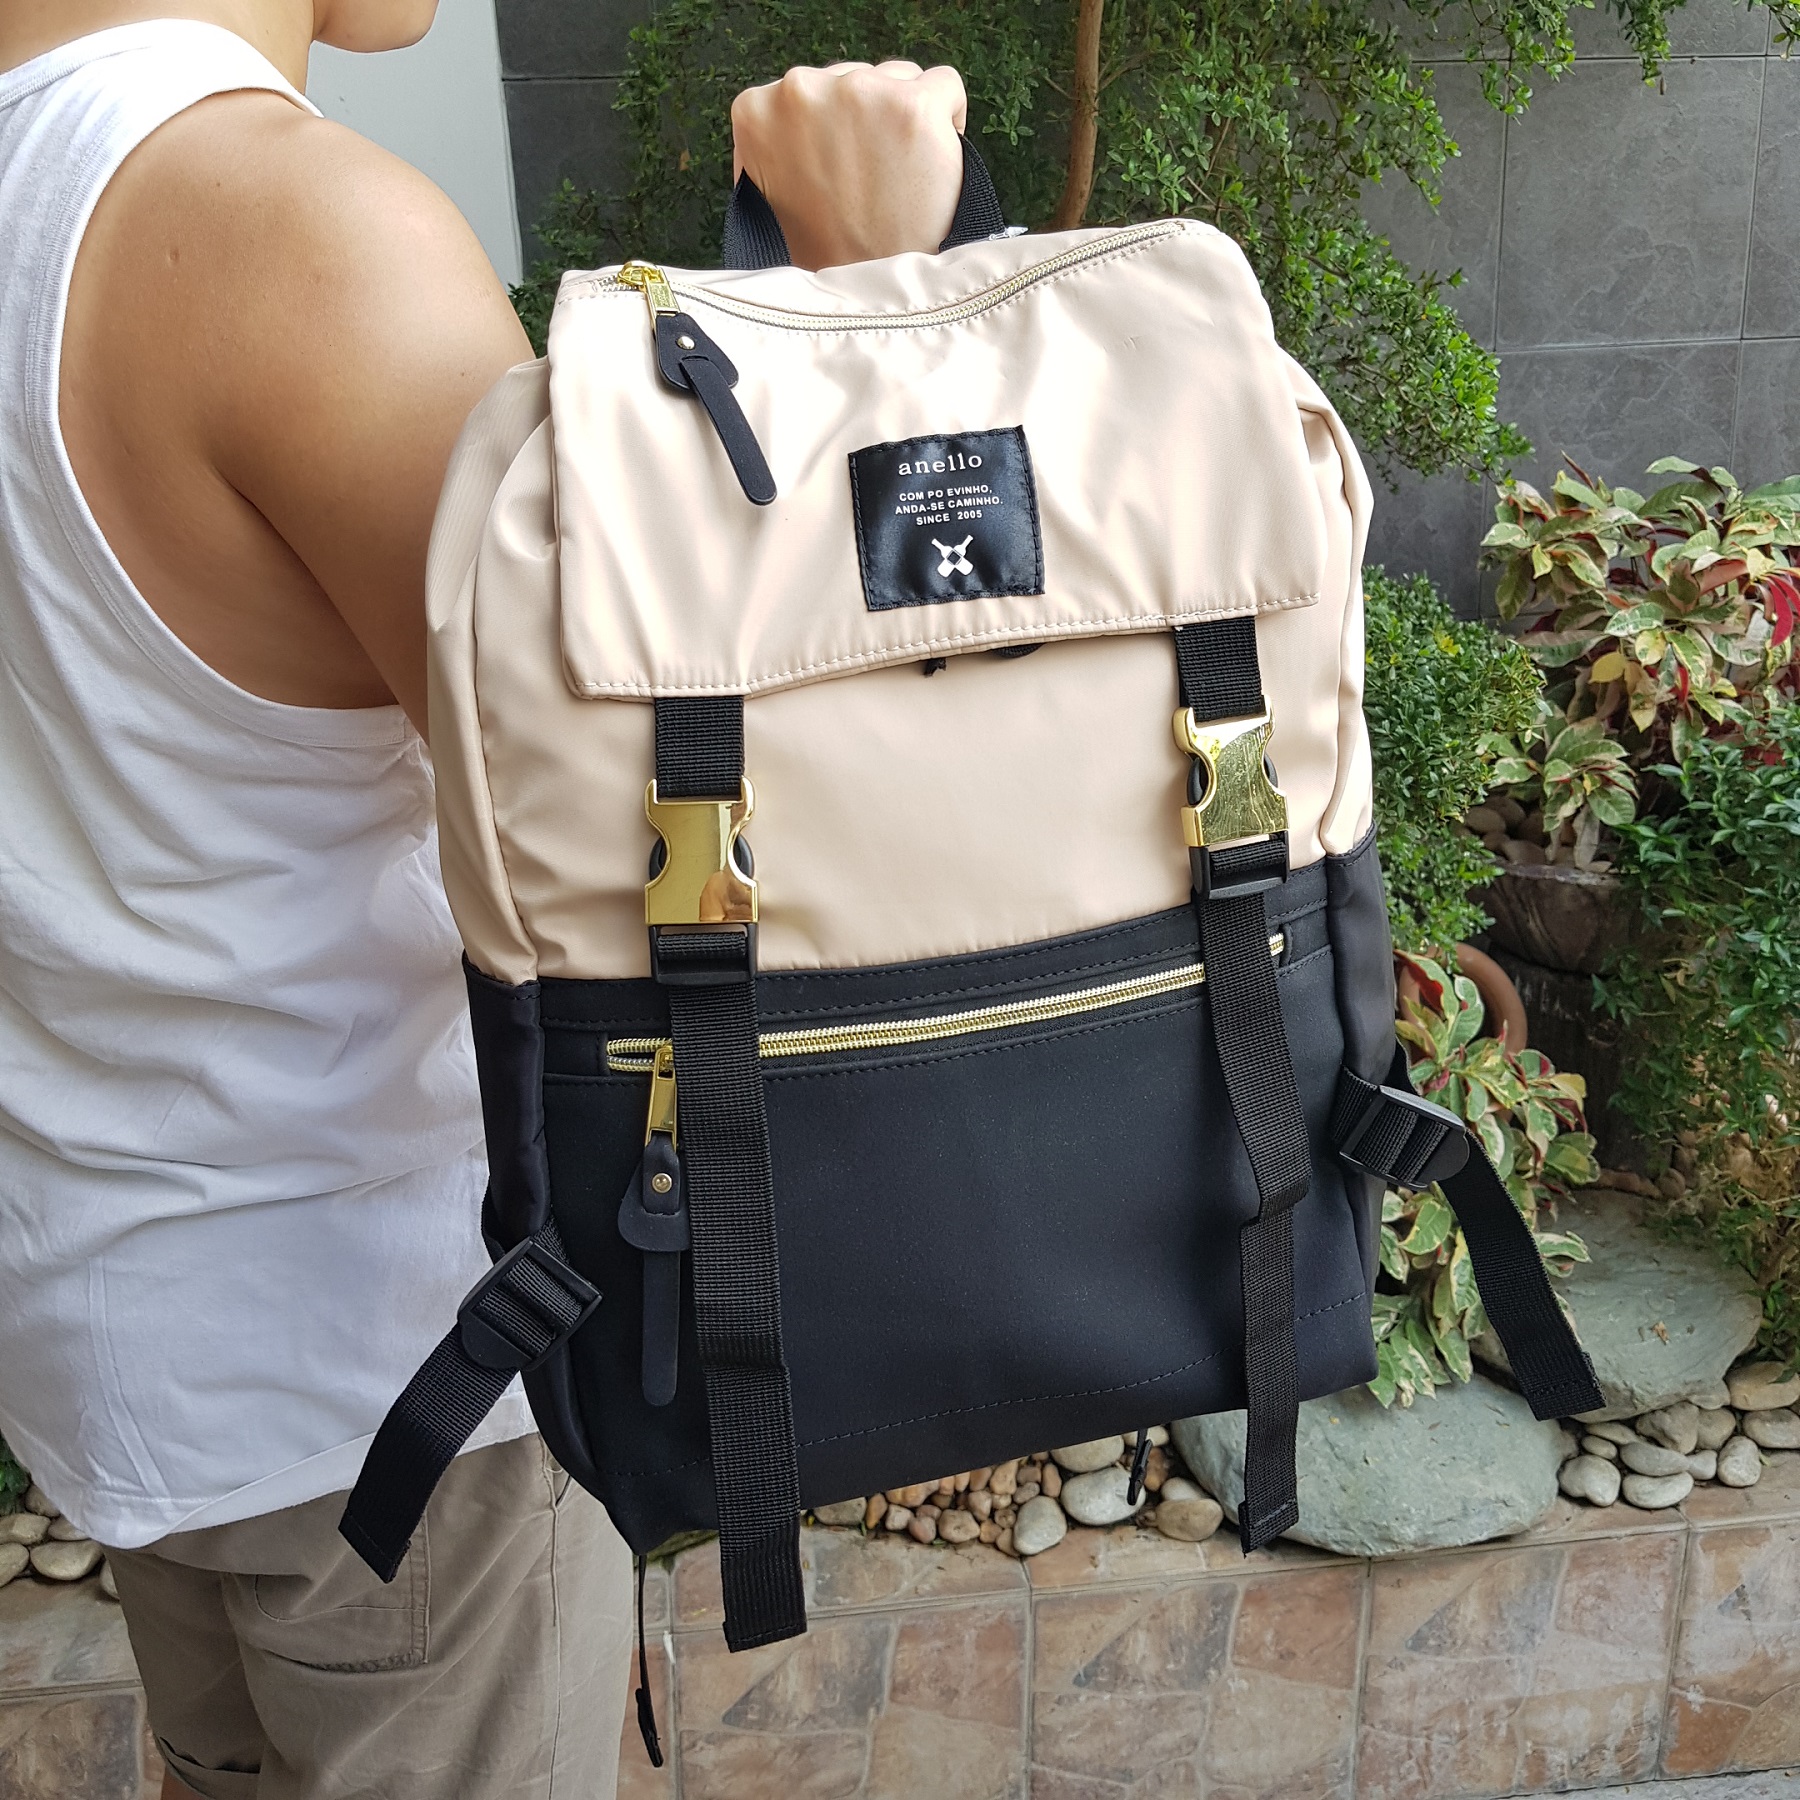 Backpacks Philippe Model - Ale nylon backpack - ALEUW006U0